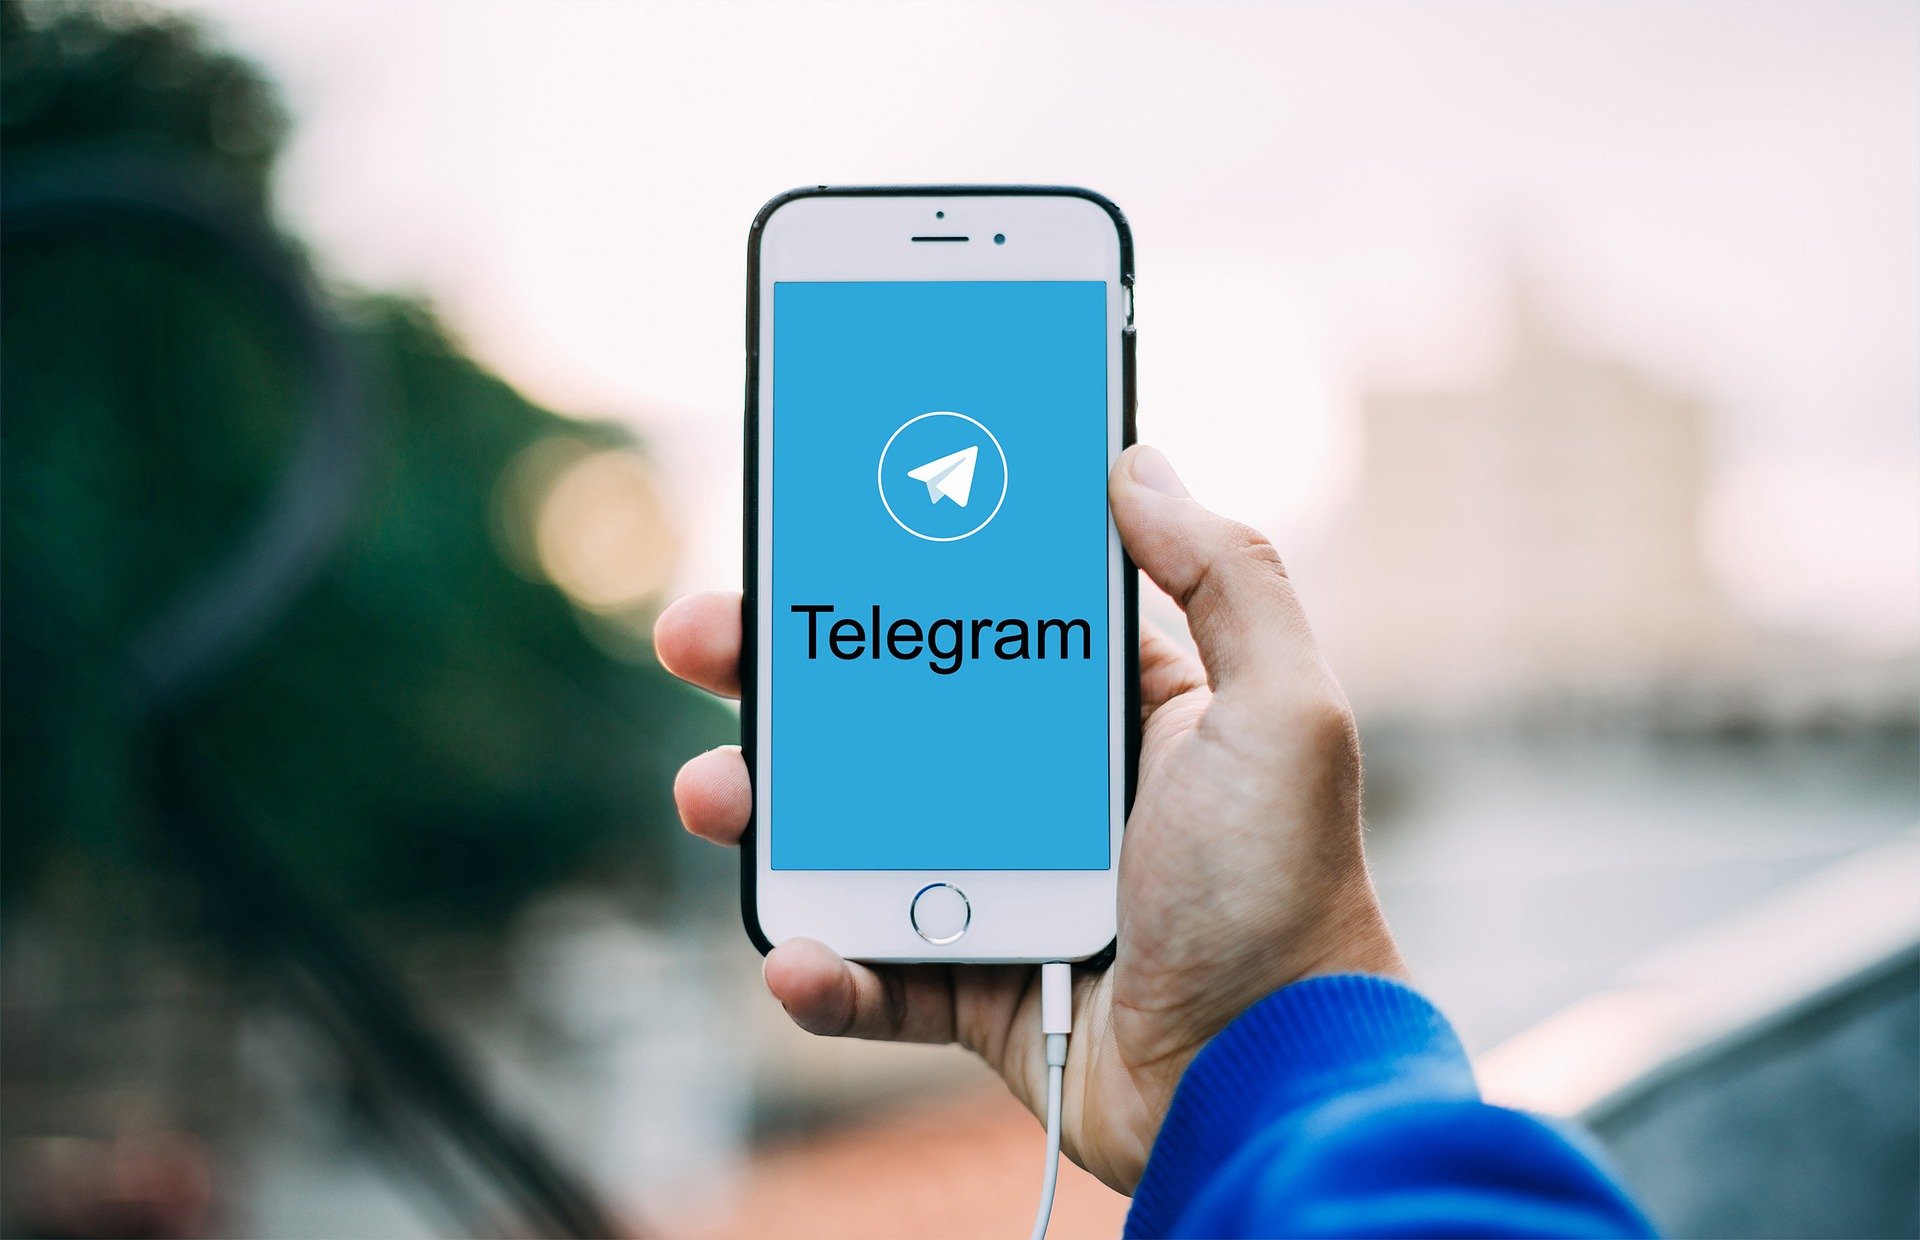 Conteúdo neonazista avança em canais do Telegram, aponta pesquisa